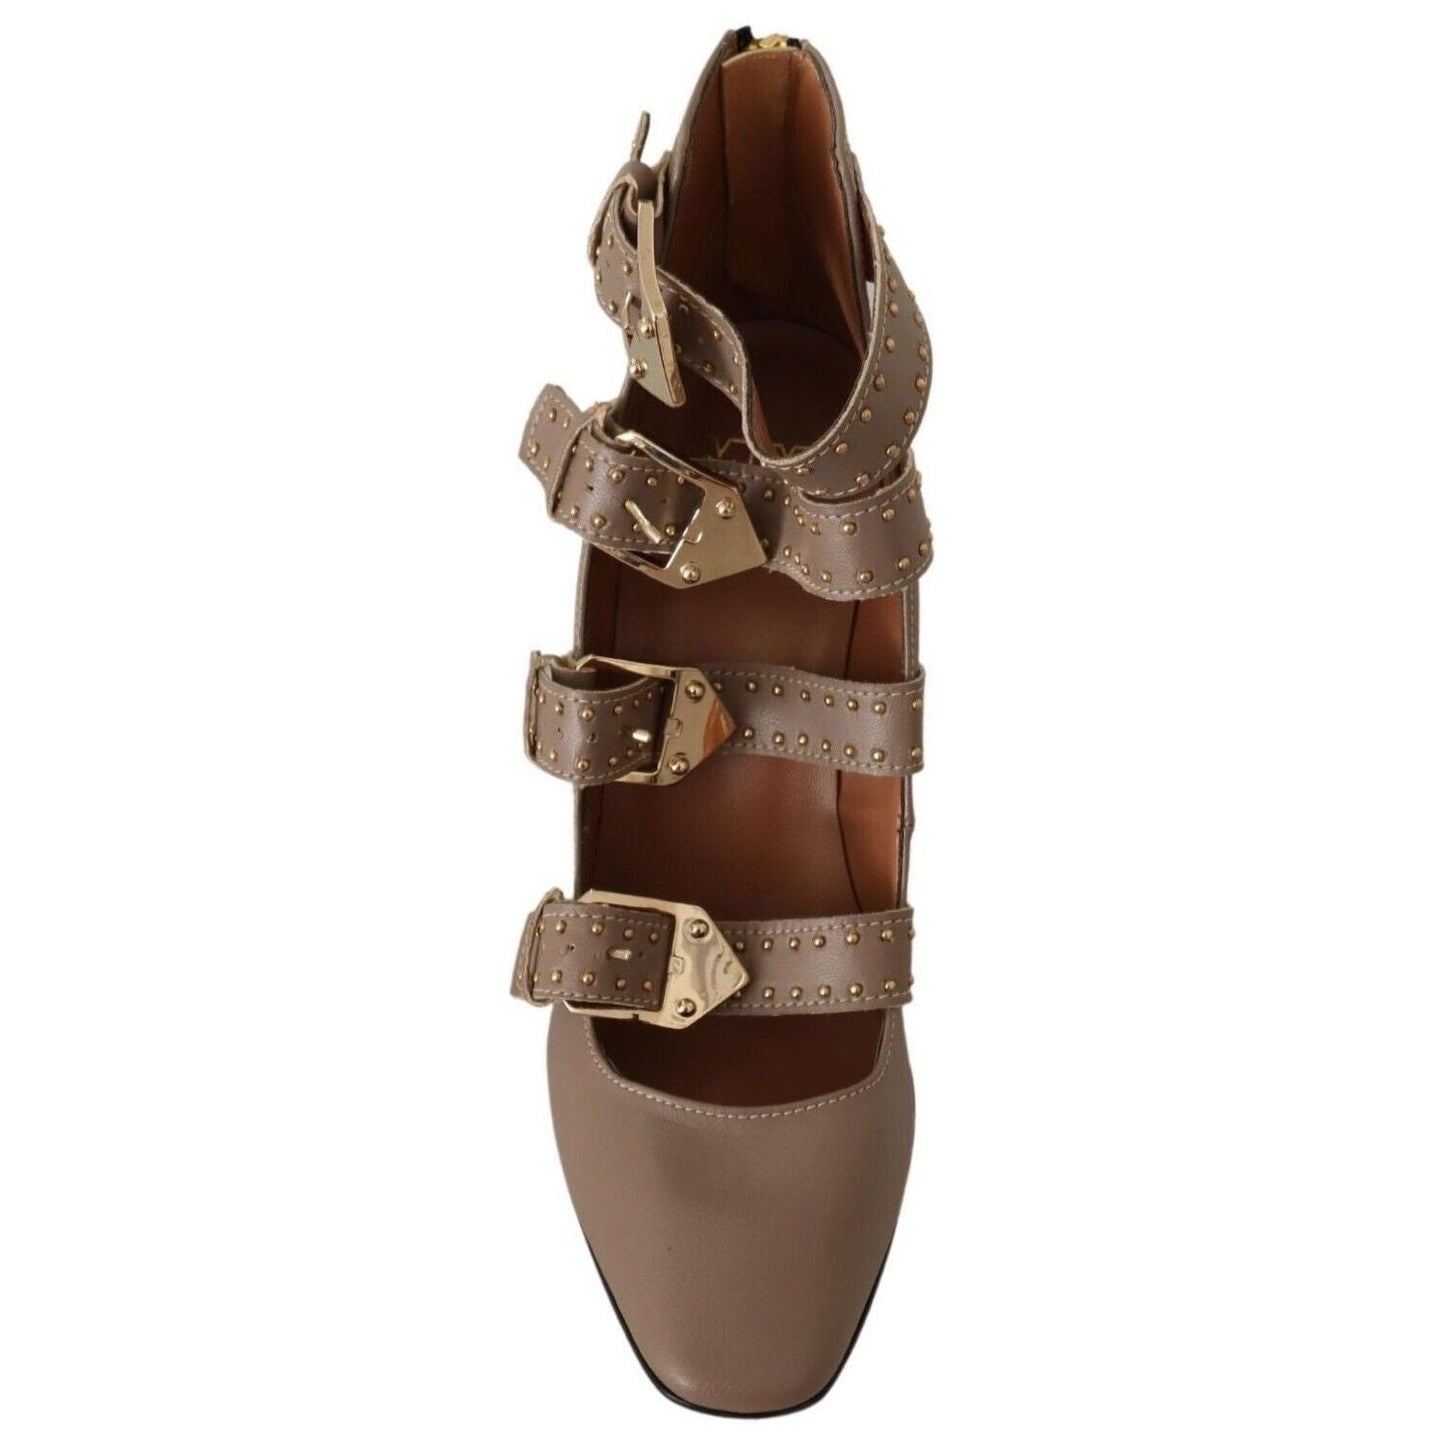 MY TWIN Elegant Leather Multi-Buckle Heels in Brown WOMAN PUMPS brown-leather-block-heels-multi-buckle-pumps-shoes s-l1600-3-171-918f4ea6-501.jpg